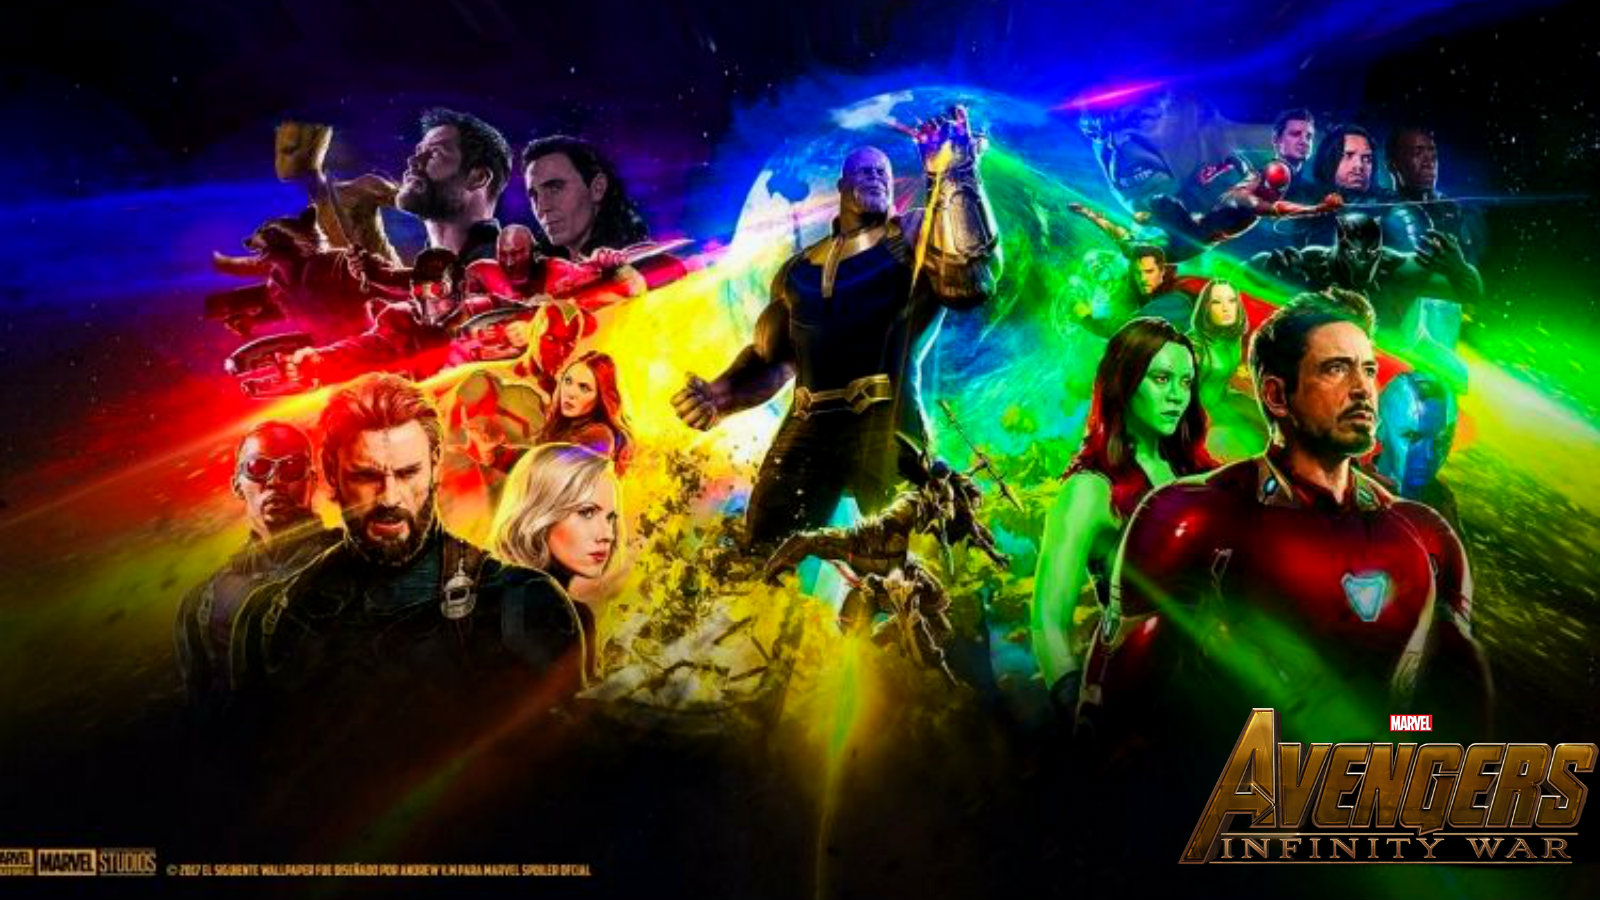 Avengers Infinity War Image